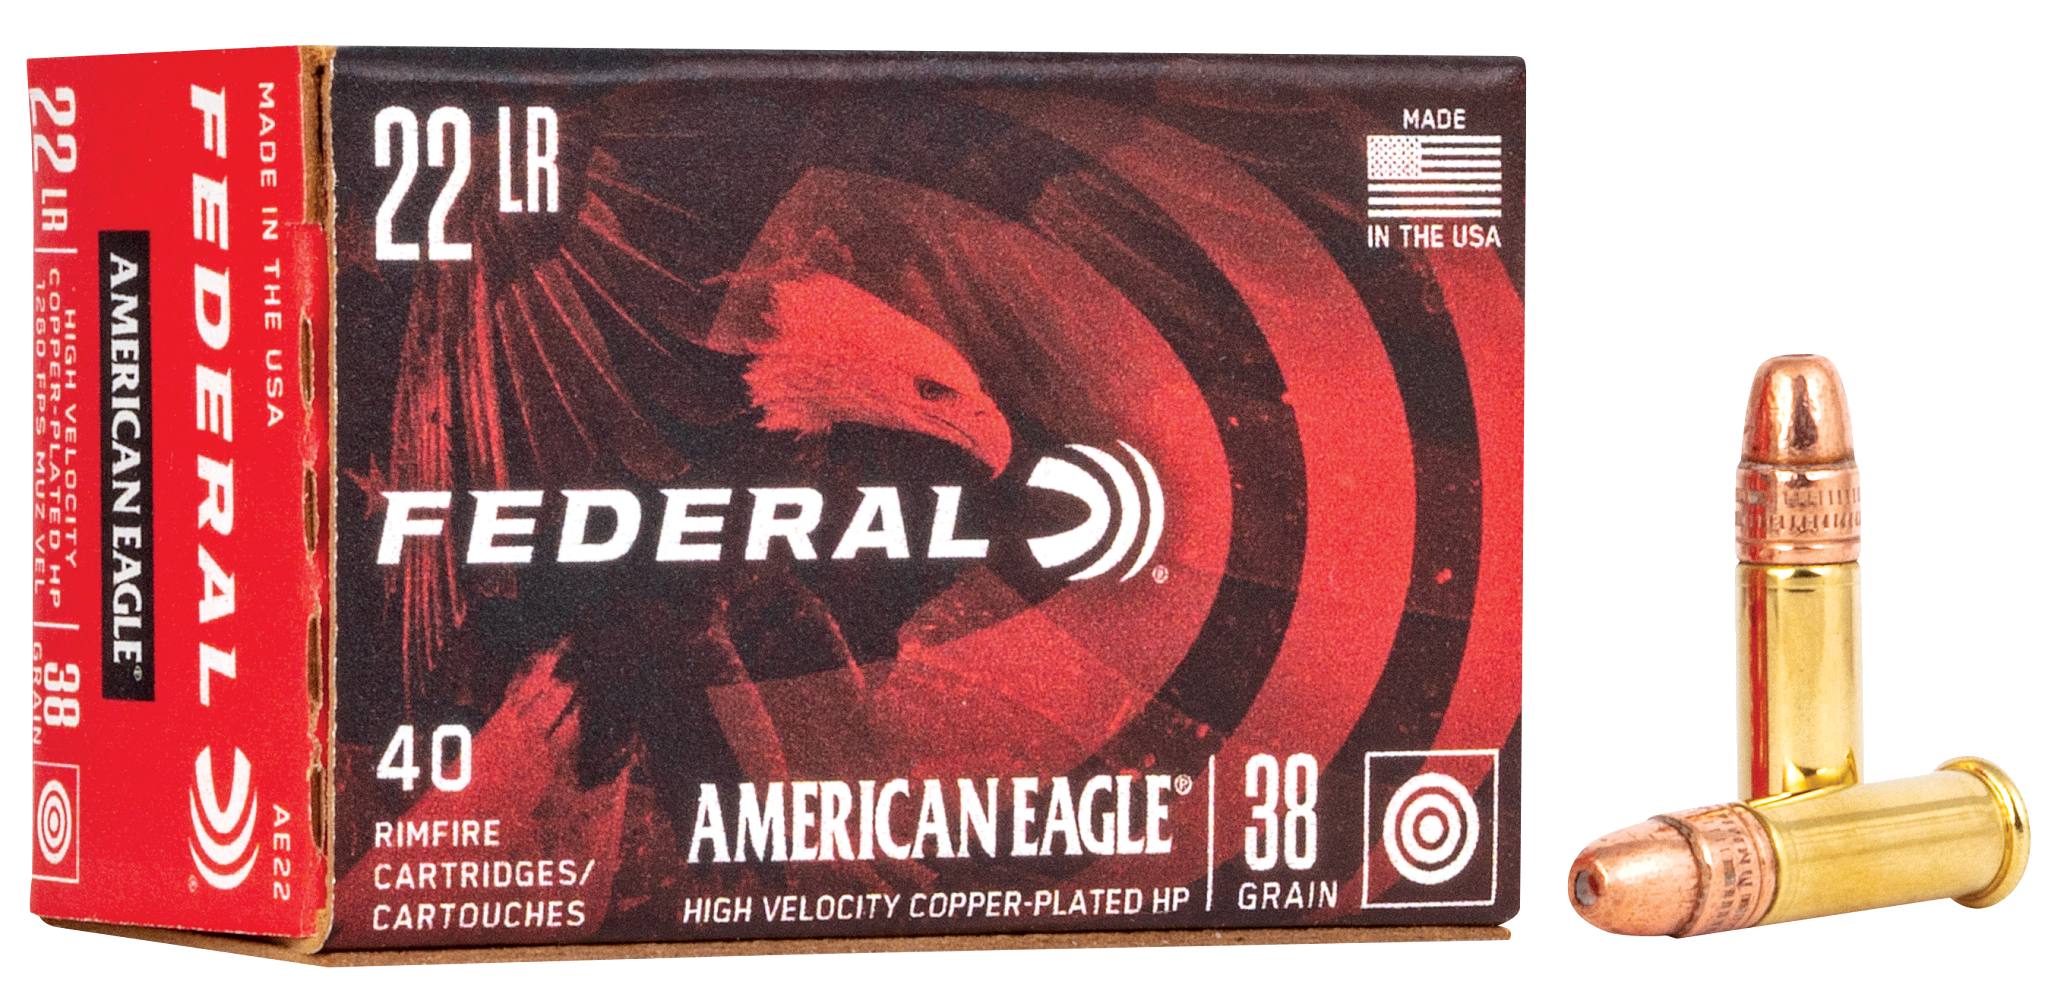 Buy American Eagle Rimfire for USD 4.99